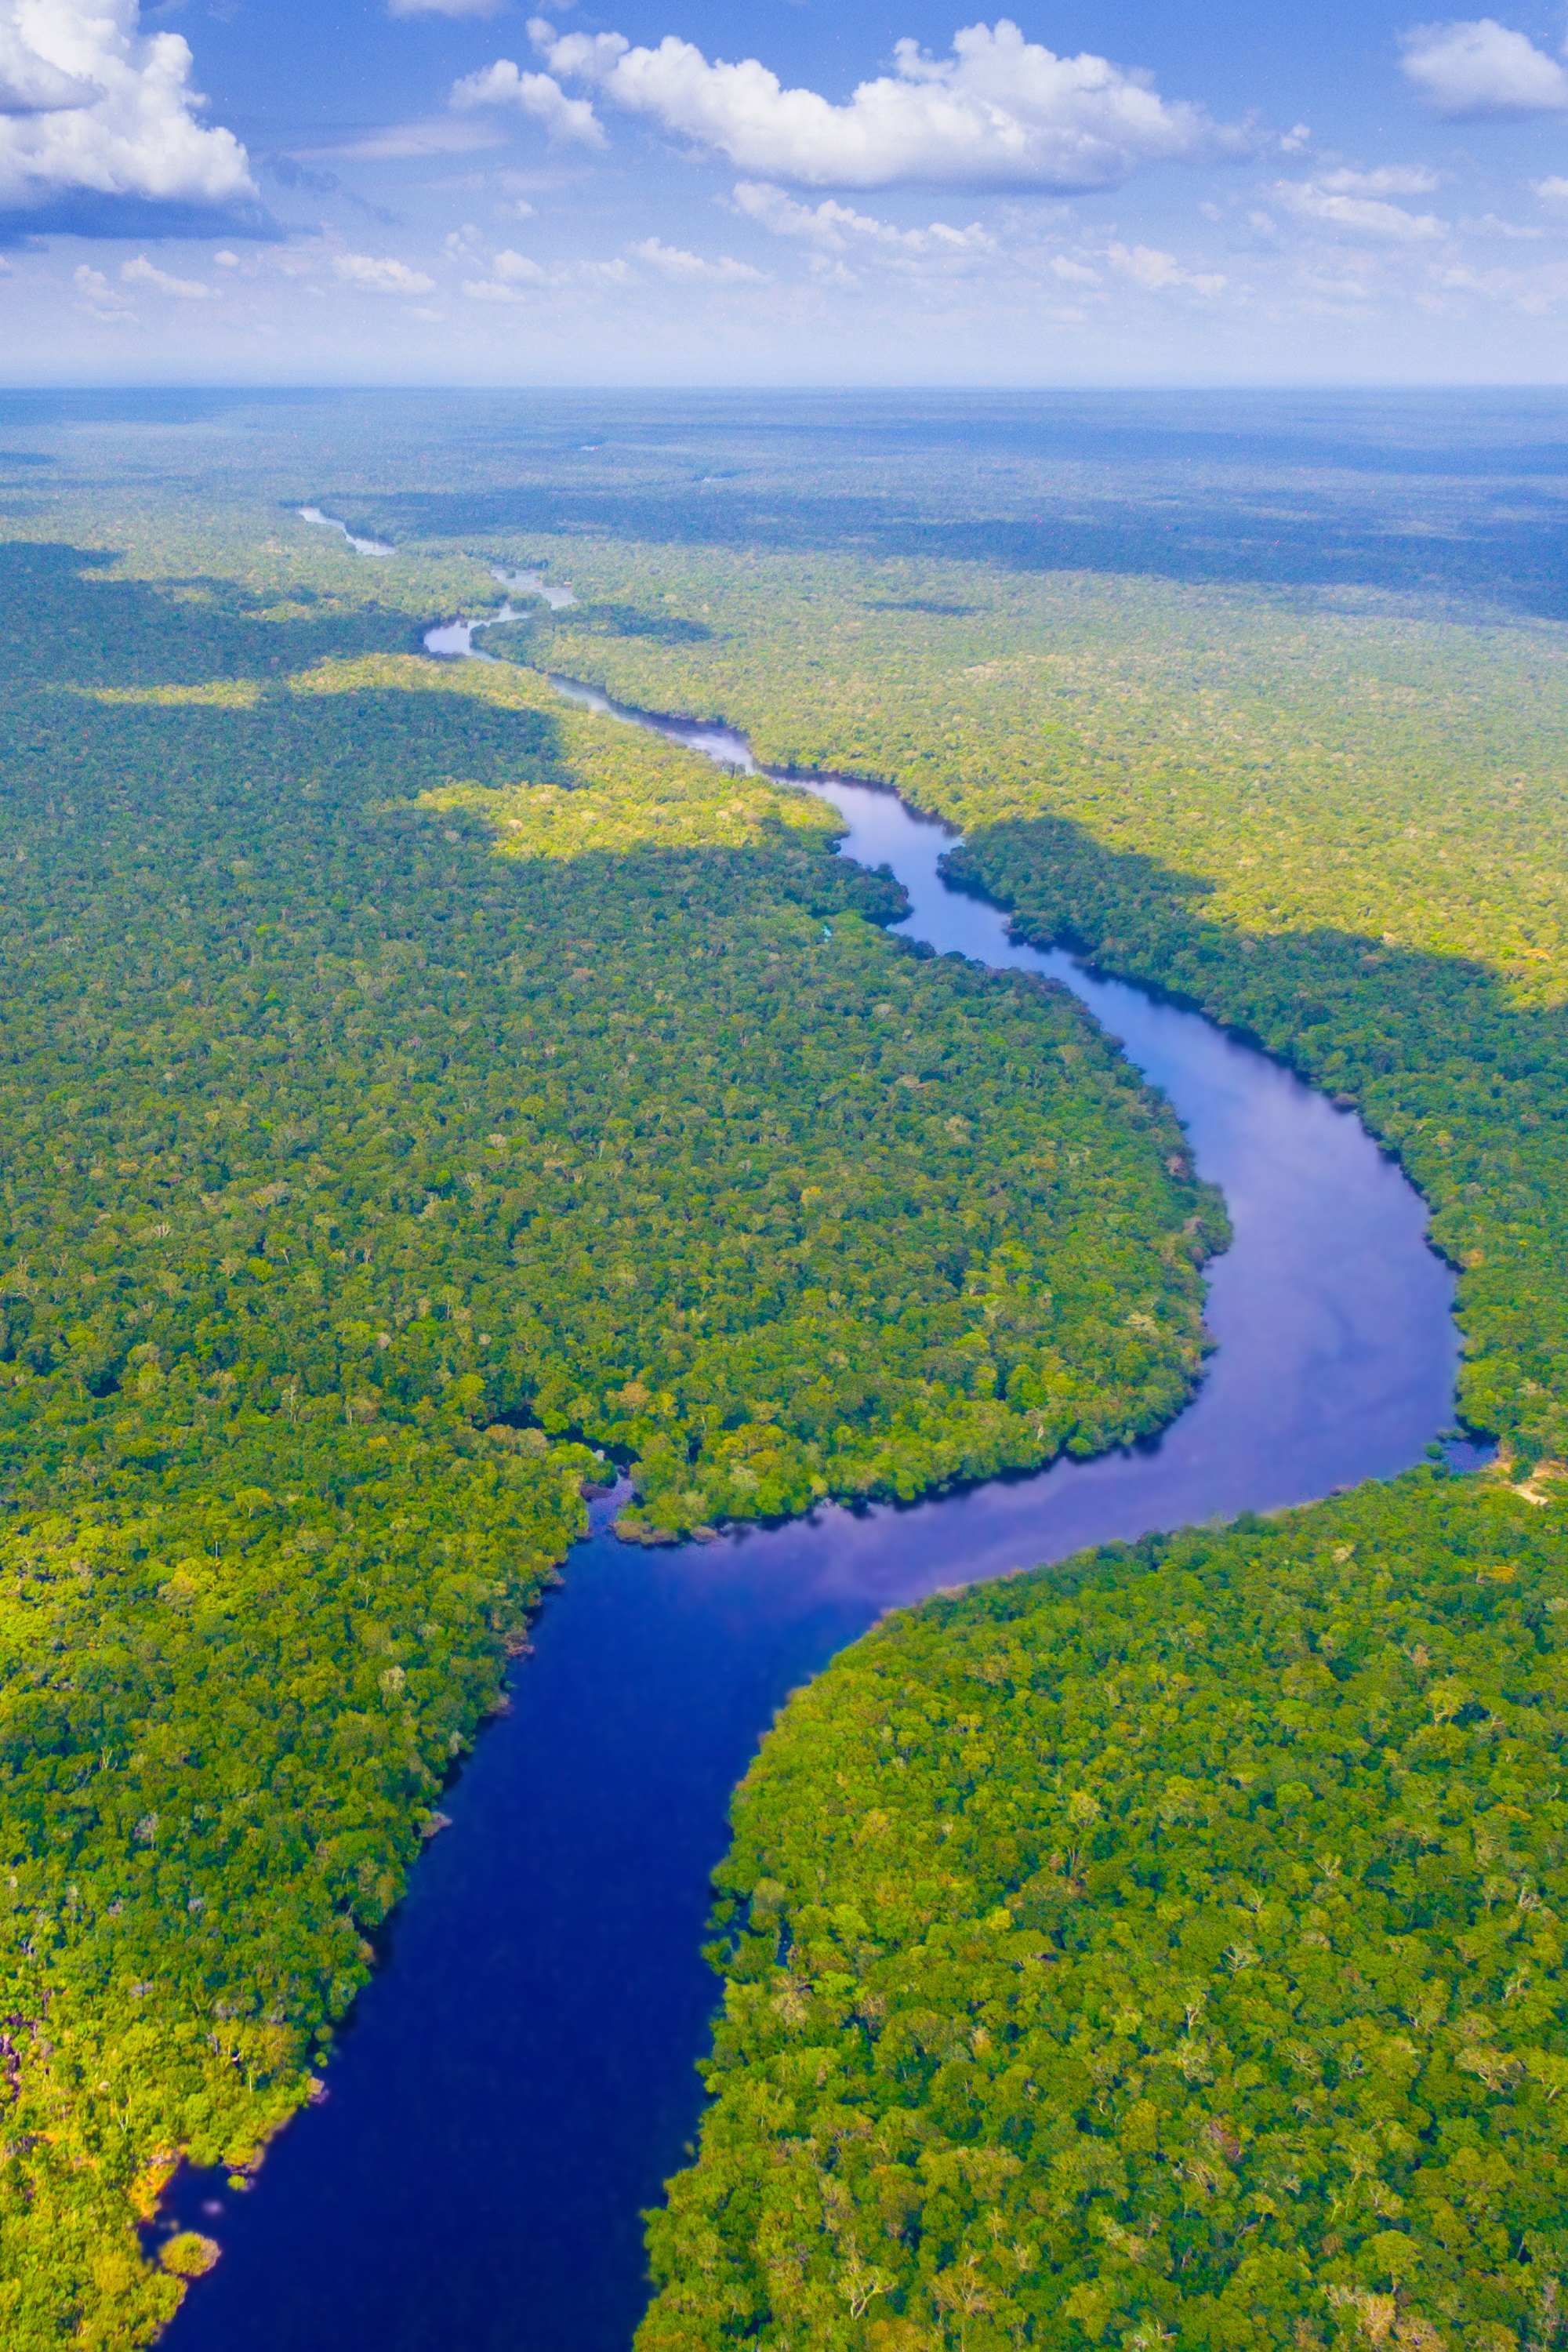 巴西亚马孙河热带雨林大火,对世界气候有影响吗?